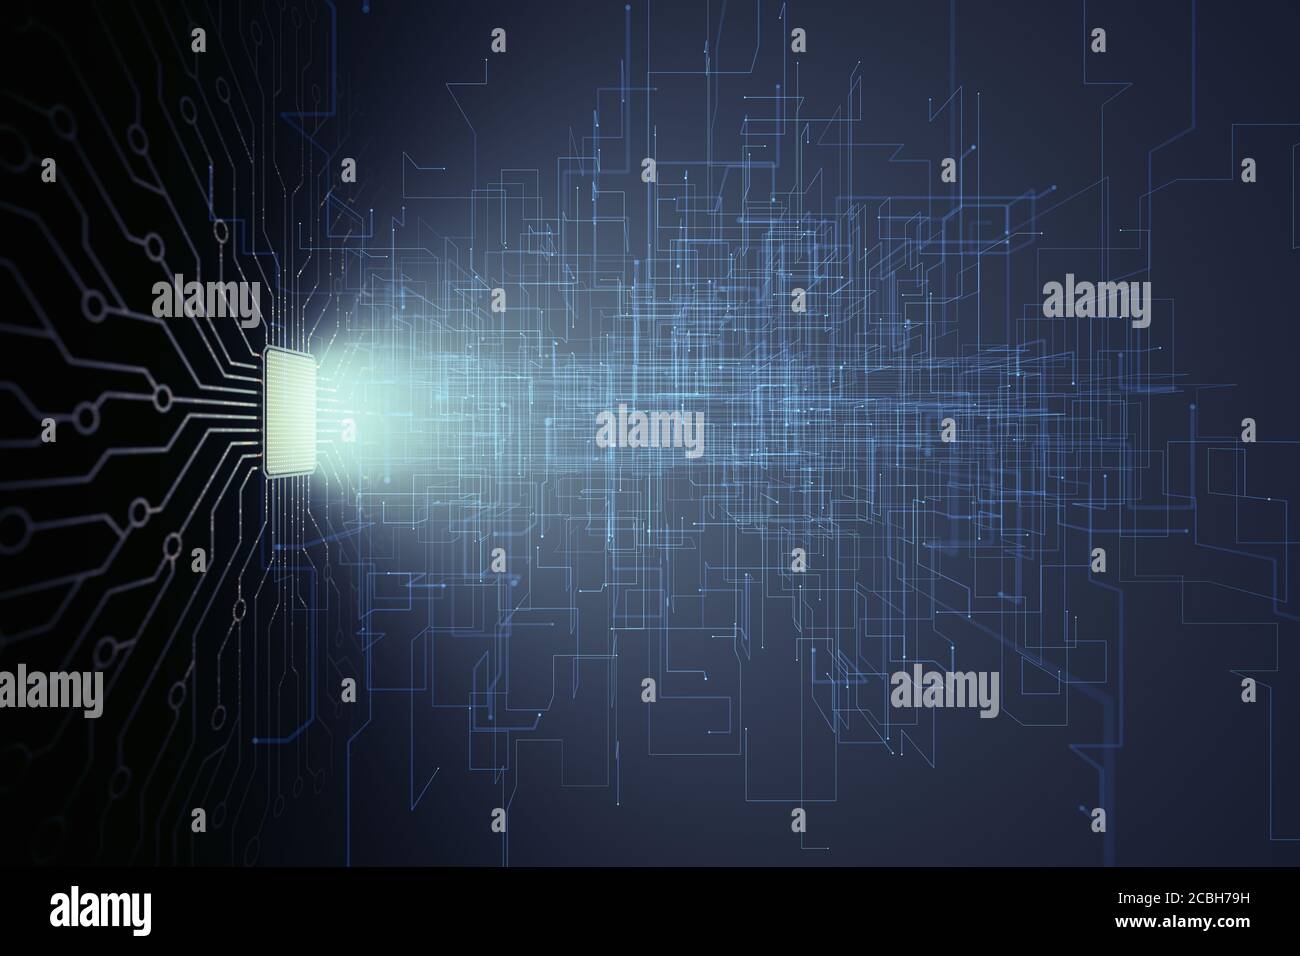 Künstliche Intelligenz, Mikrochip-Verbindungen, elektrische Impulse und binäre Codes. Stockfoto